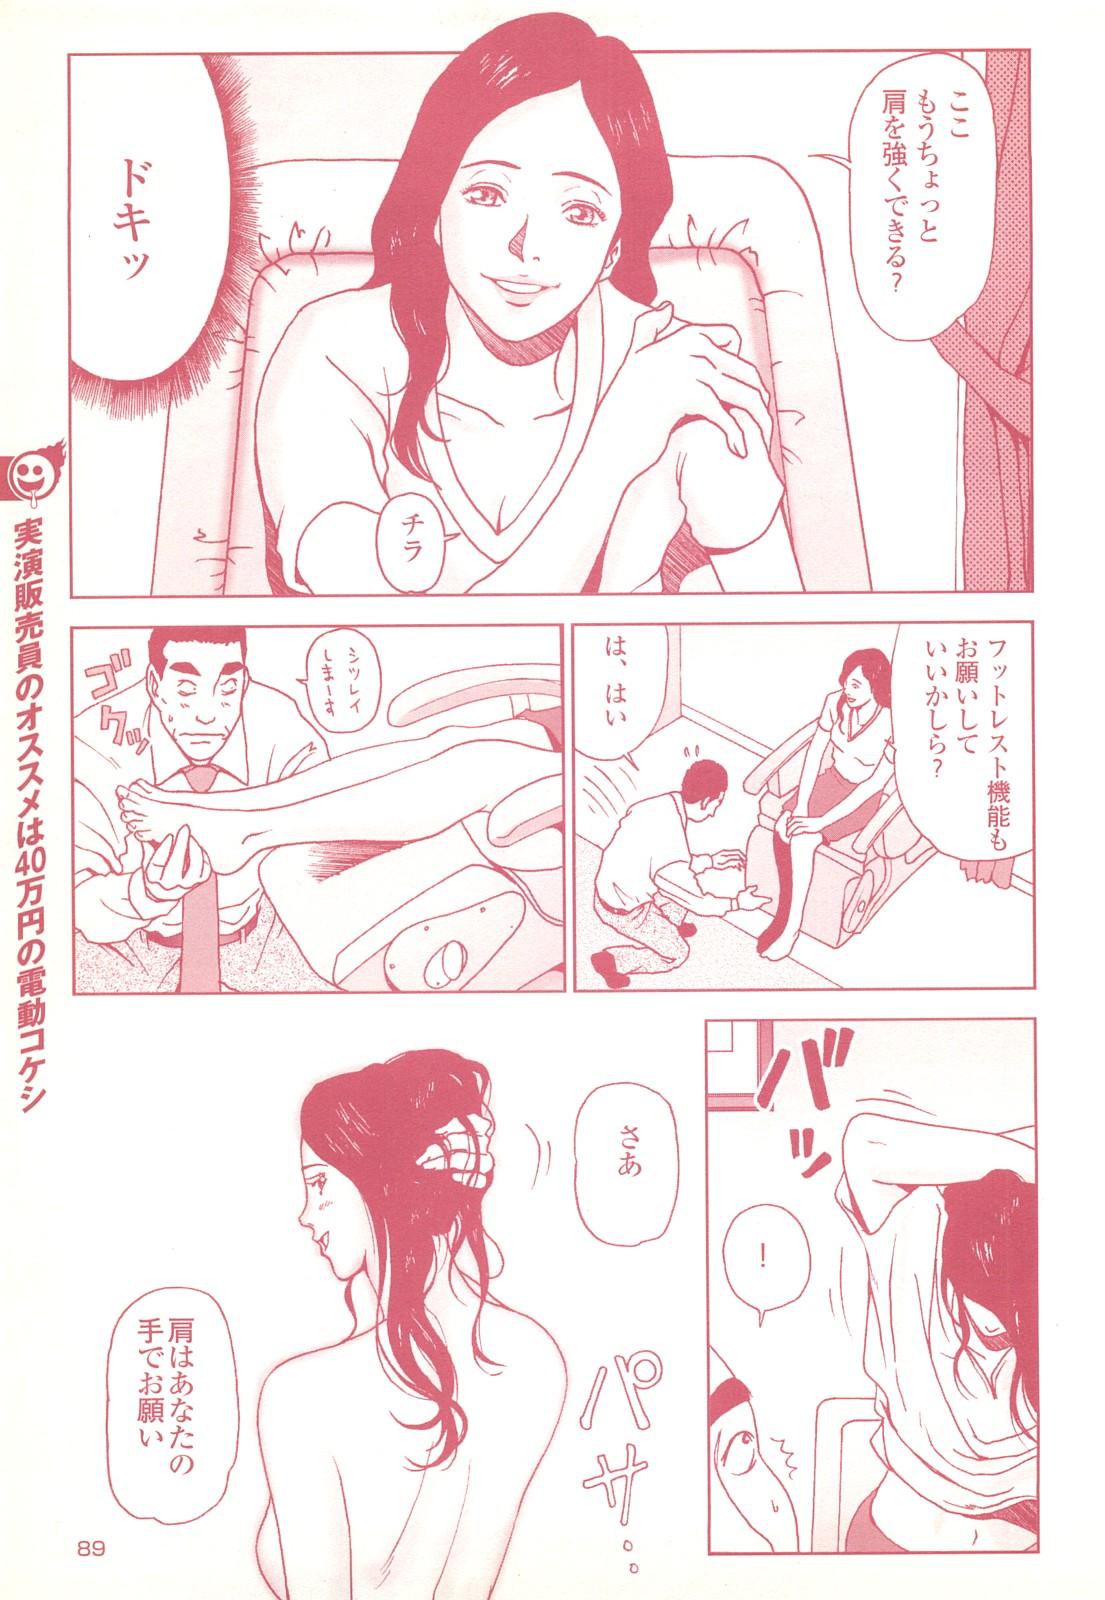 コミック裏モノJAPAN Vol.18 今井のりたつスペシャル号 88